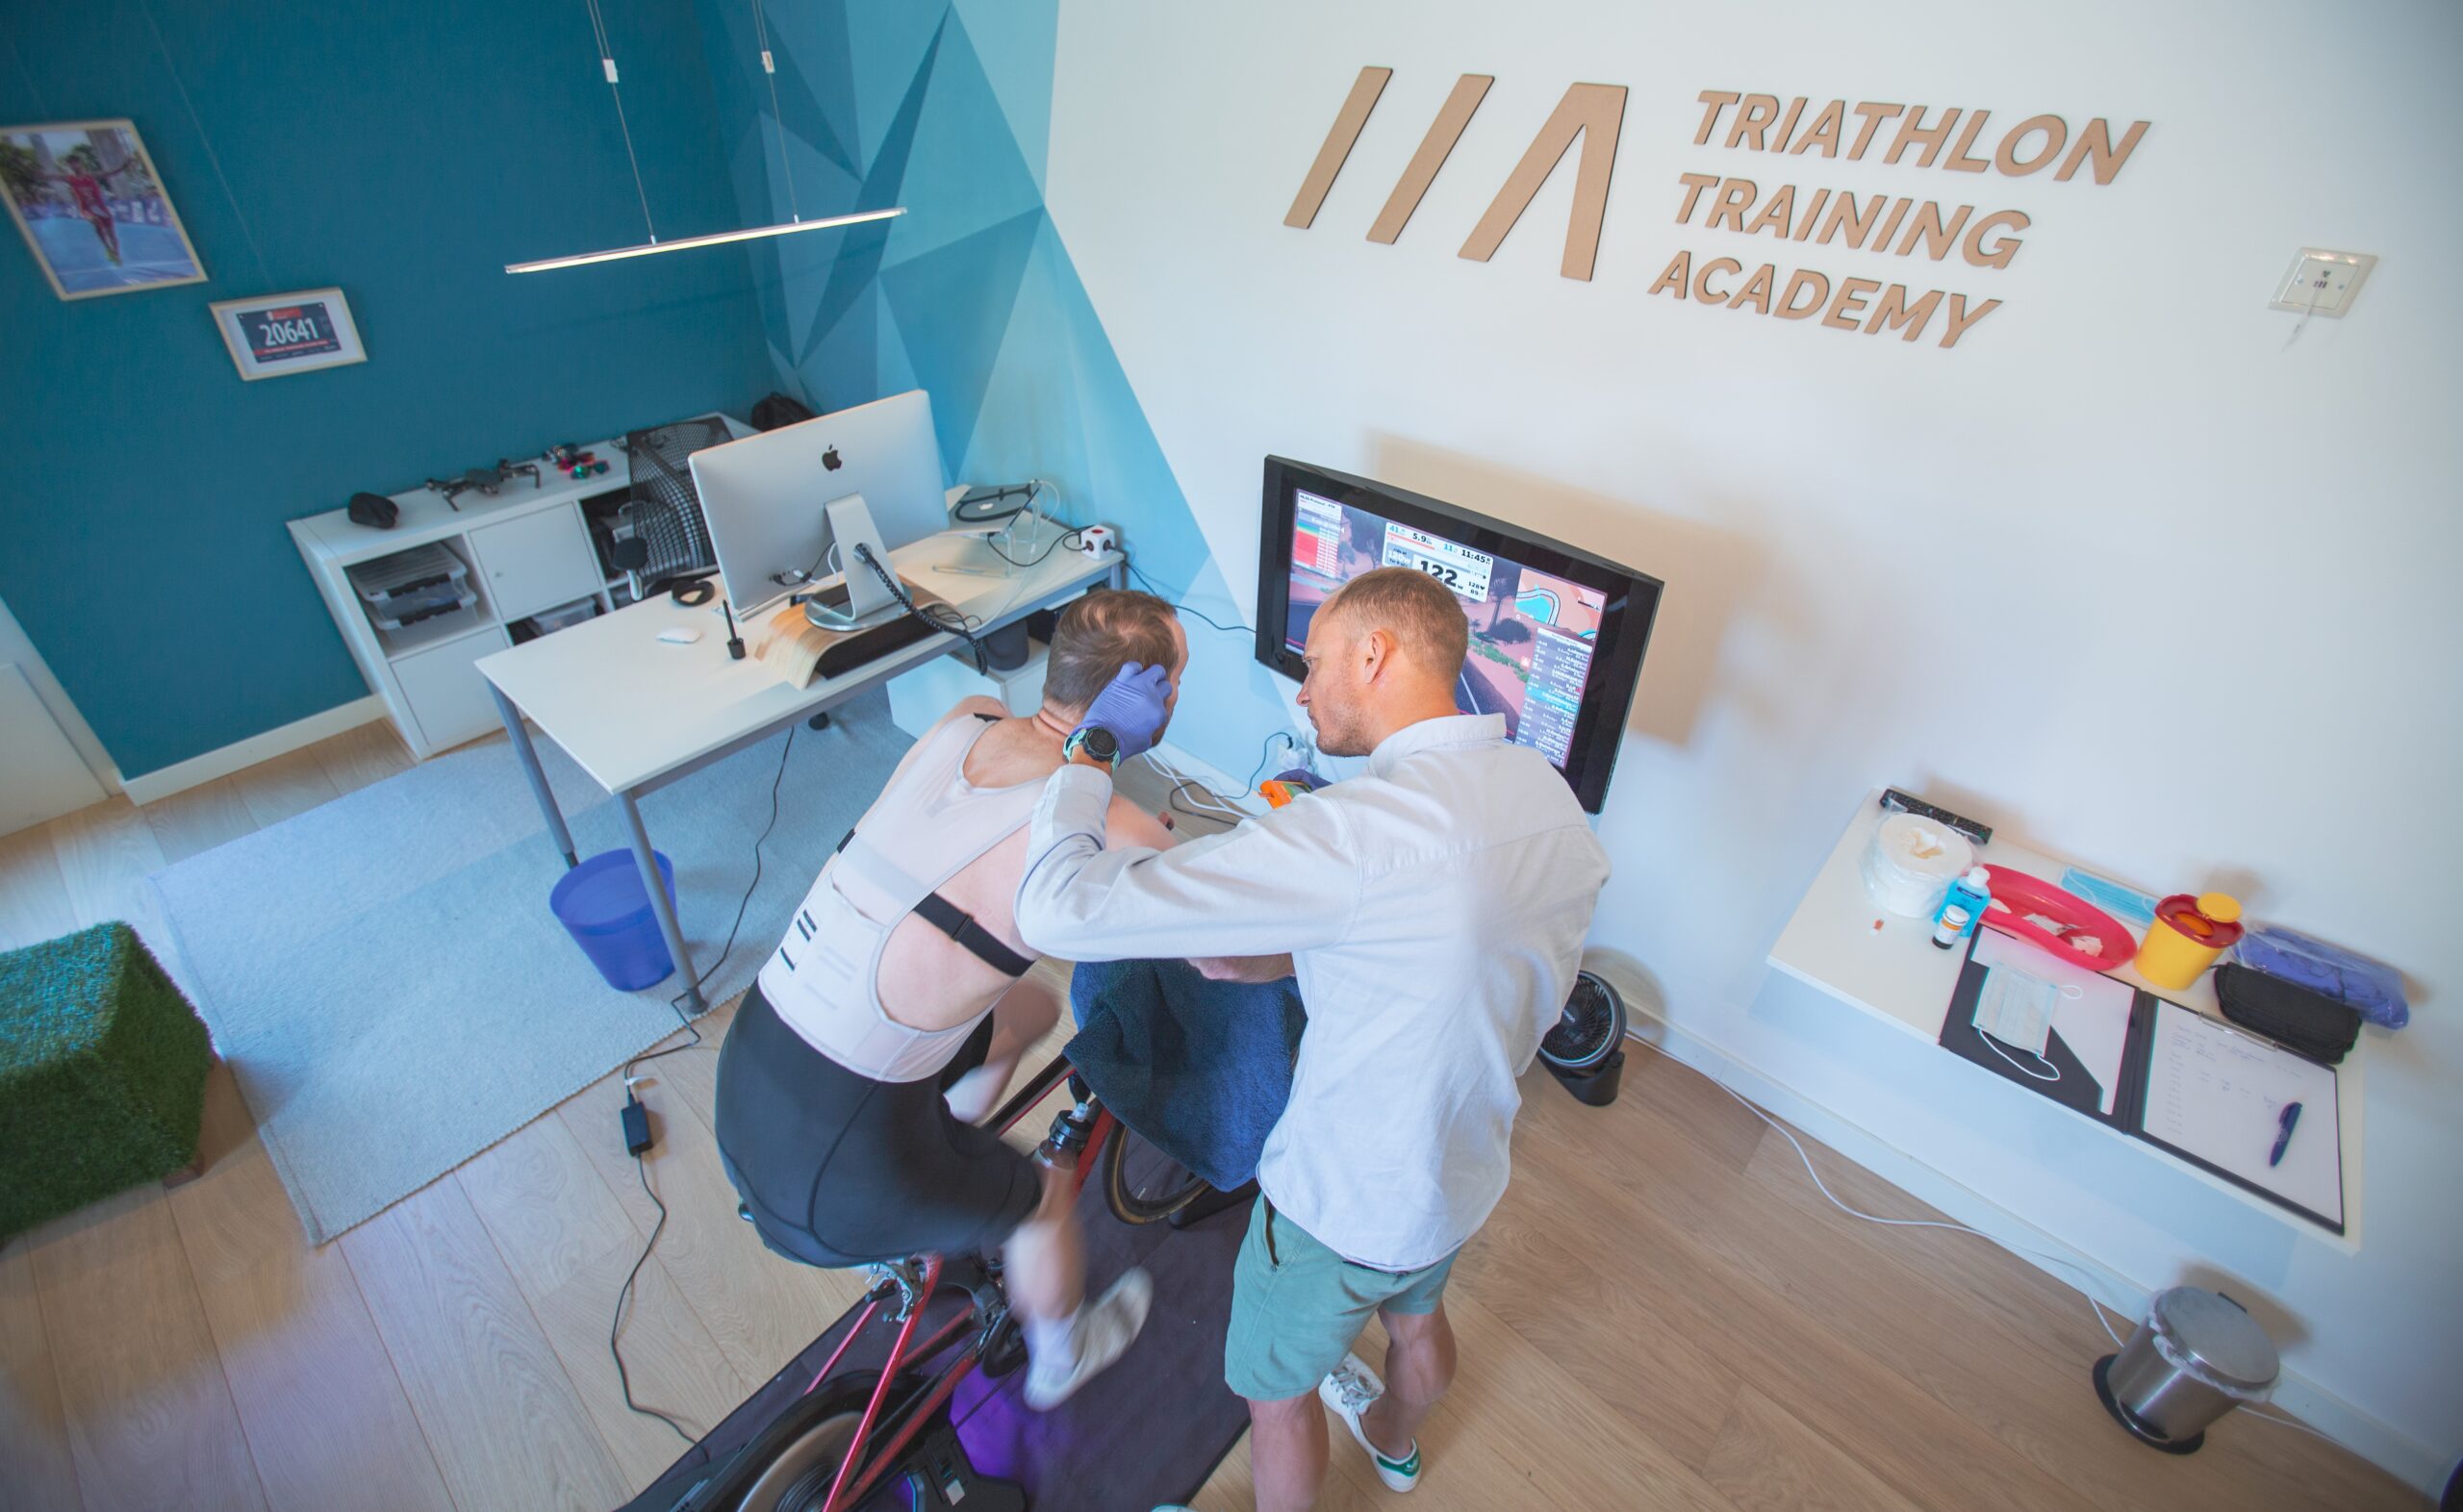 INSCYD test. Partner: Triathlon Training Academy